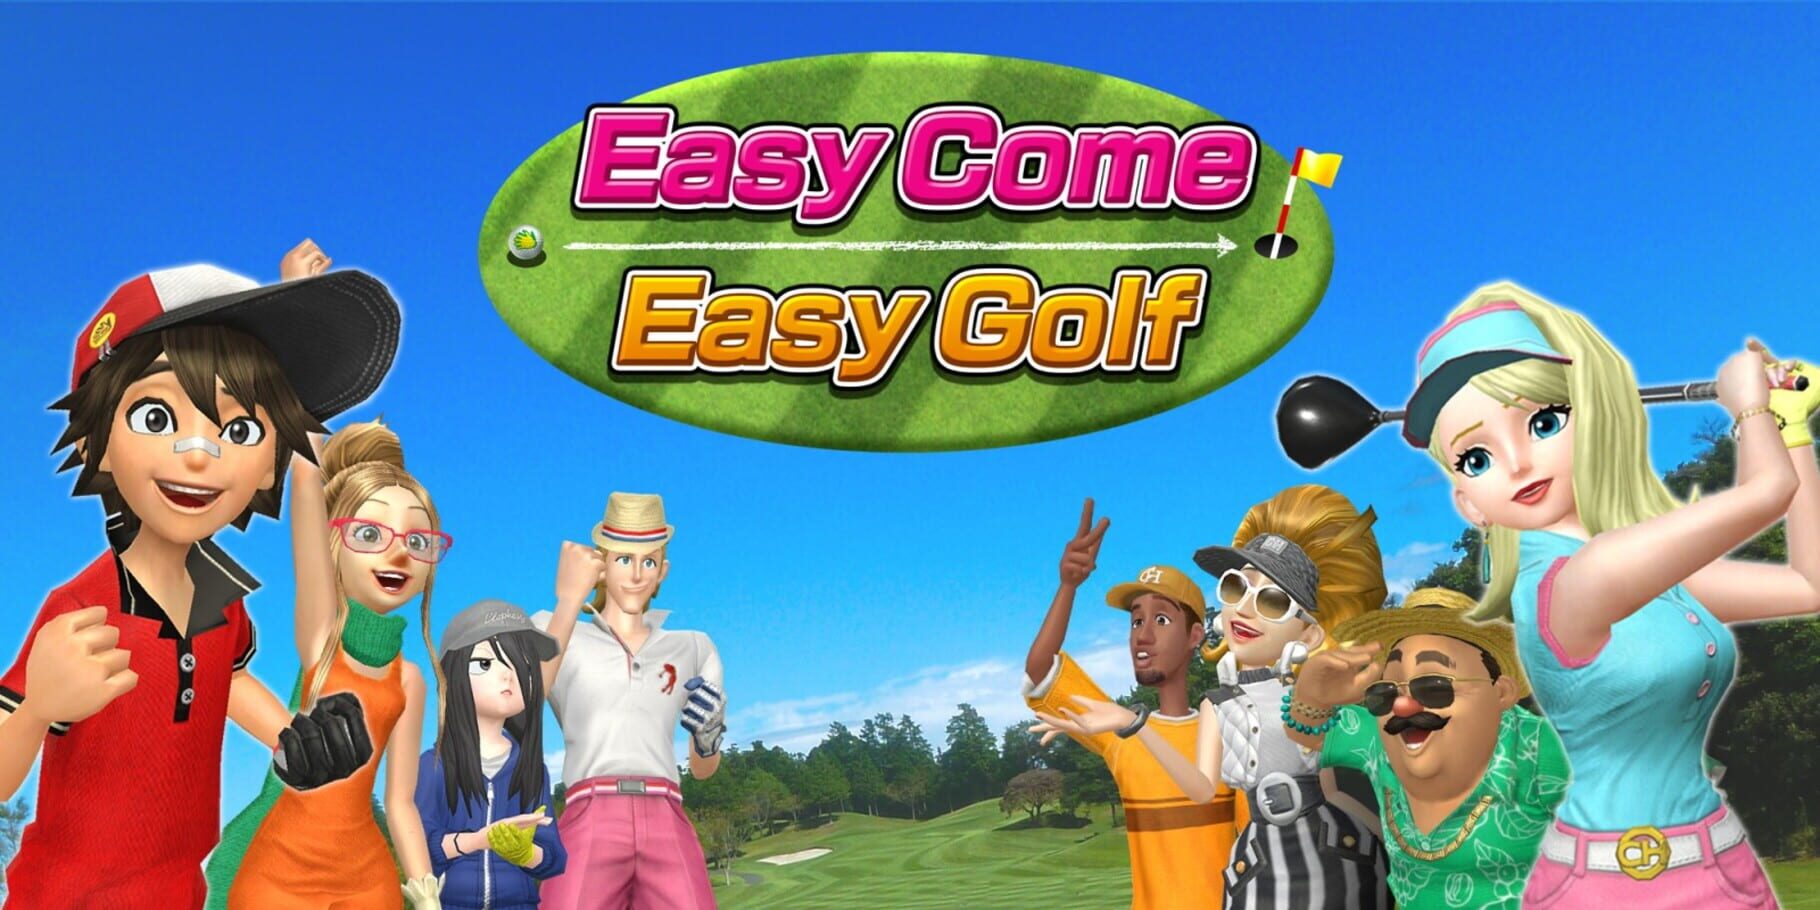 Easy Come Easy Golf artwork